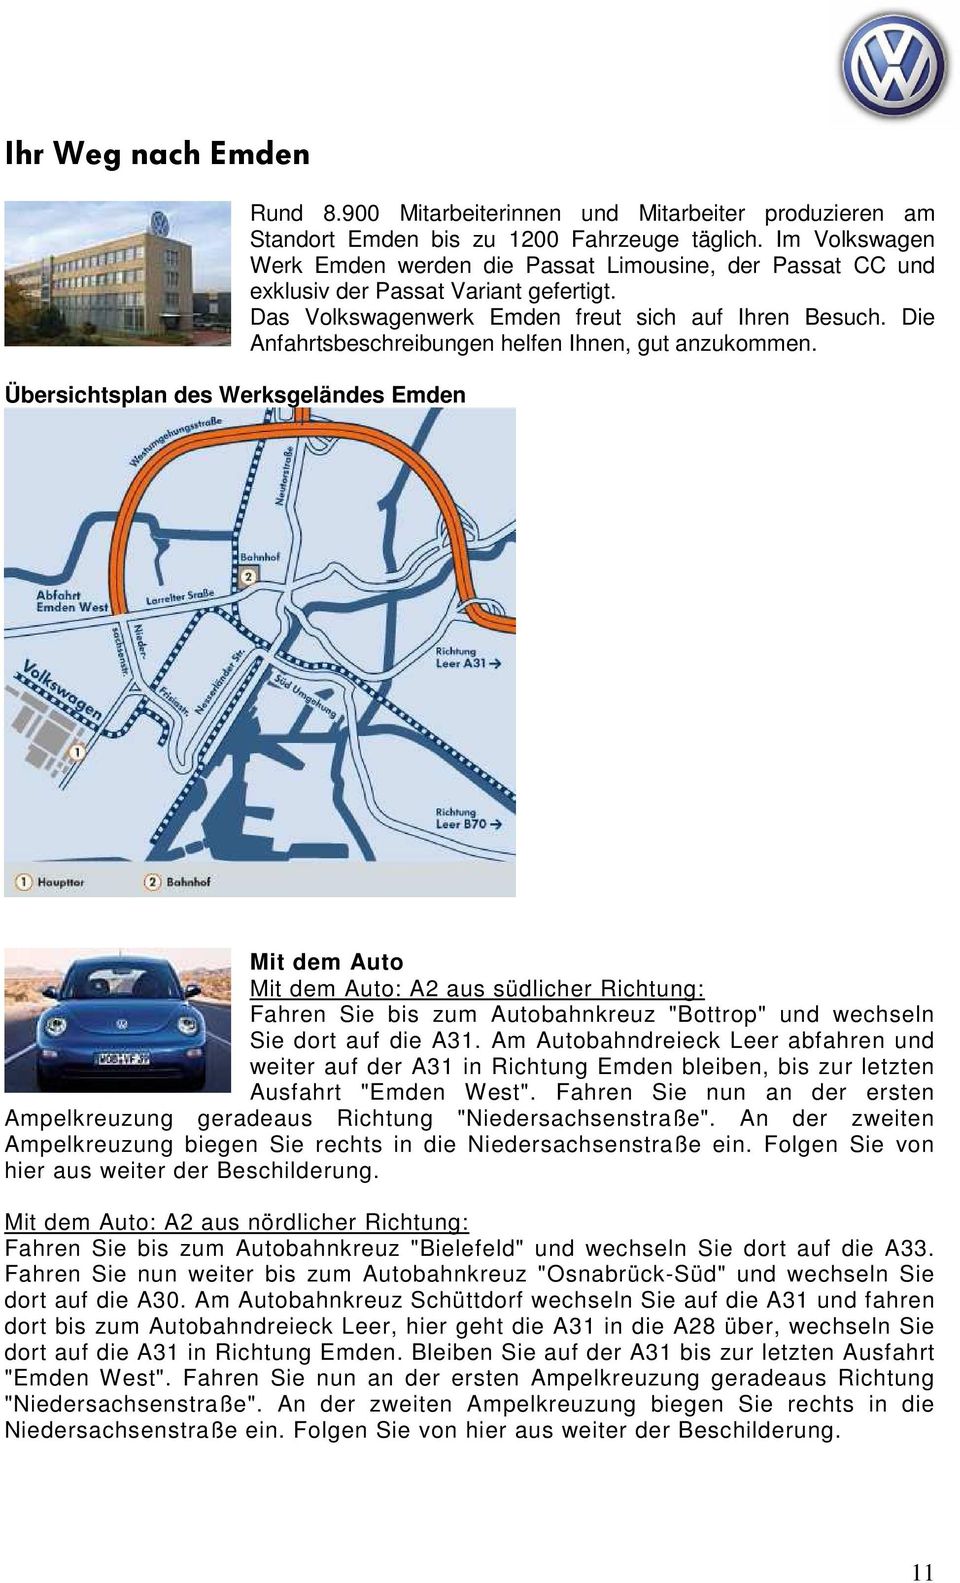 Die Anfahrtsbeschreibungen helfen Ihnen, gut anzukommen. Mit dem Auto Mit dem Auto: A2 aus südlicher Richtung: Fahren Sie bis zum Autobahnkreuz "Bottrop" und wechseln Sie dort auf die A31.